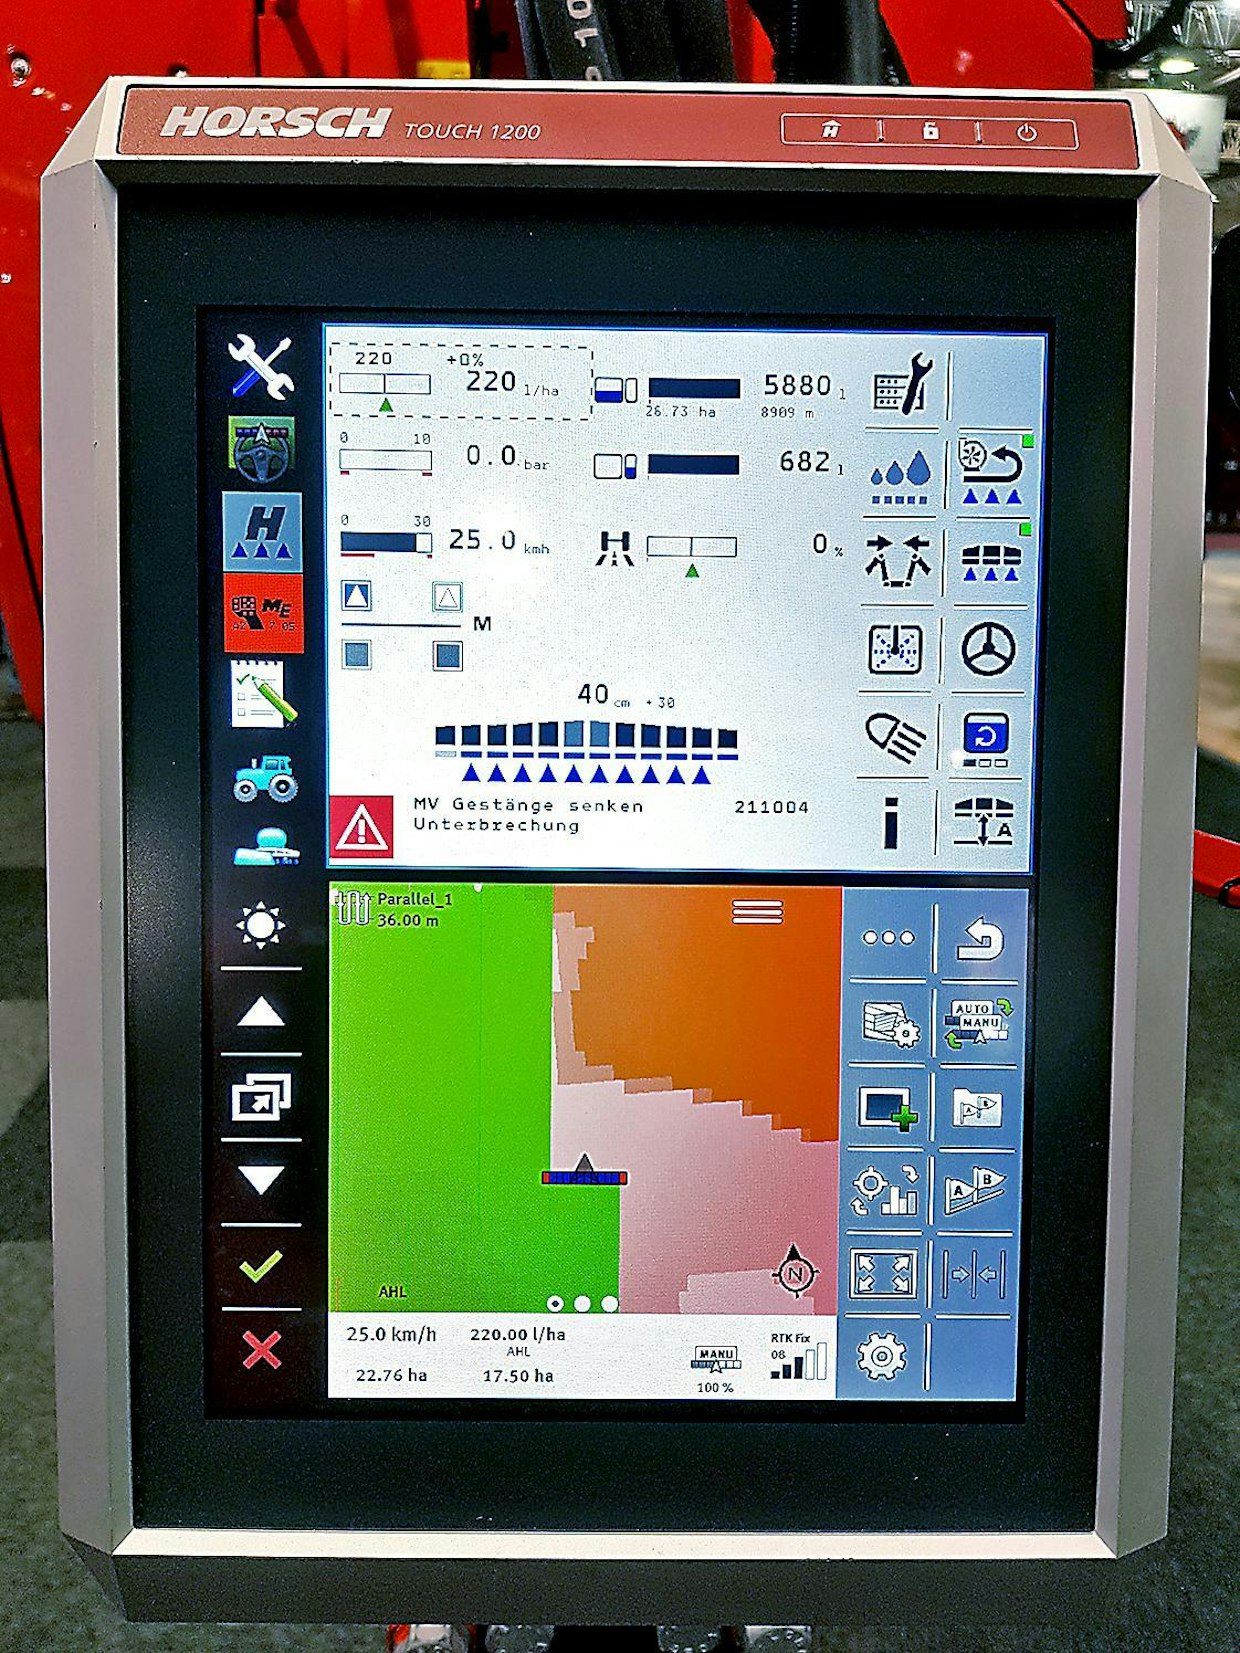 Horschin selkeä Touch 1200 Isobus -näyttö voidaan jakaa osiin. Kuvassa ovat ruiskun hallinta, ajo-opastimen tai automaattiohjauksen ohjaus ja alempana työn etenemistä kuvaava grafiikka. (TL)